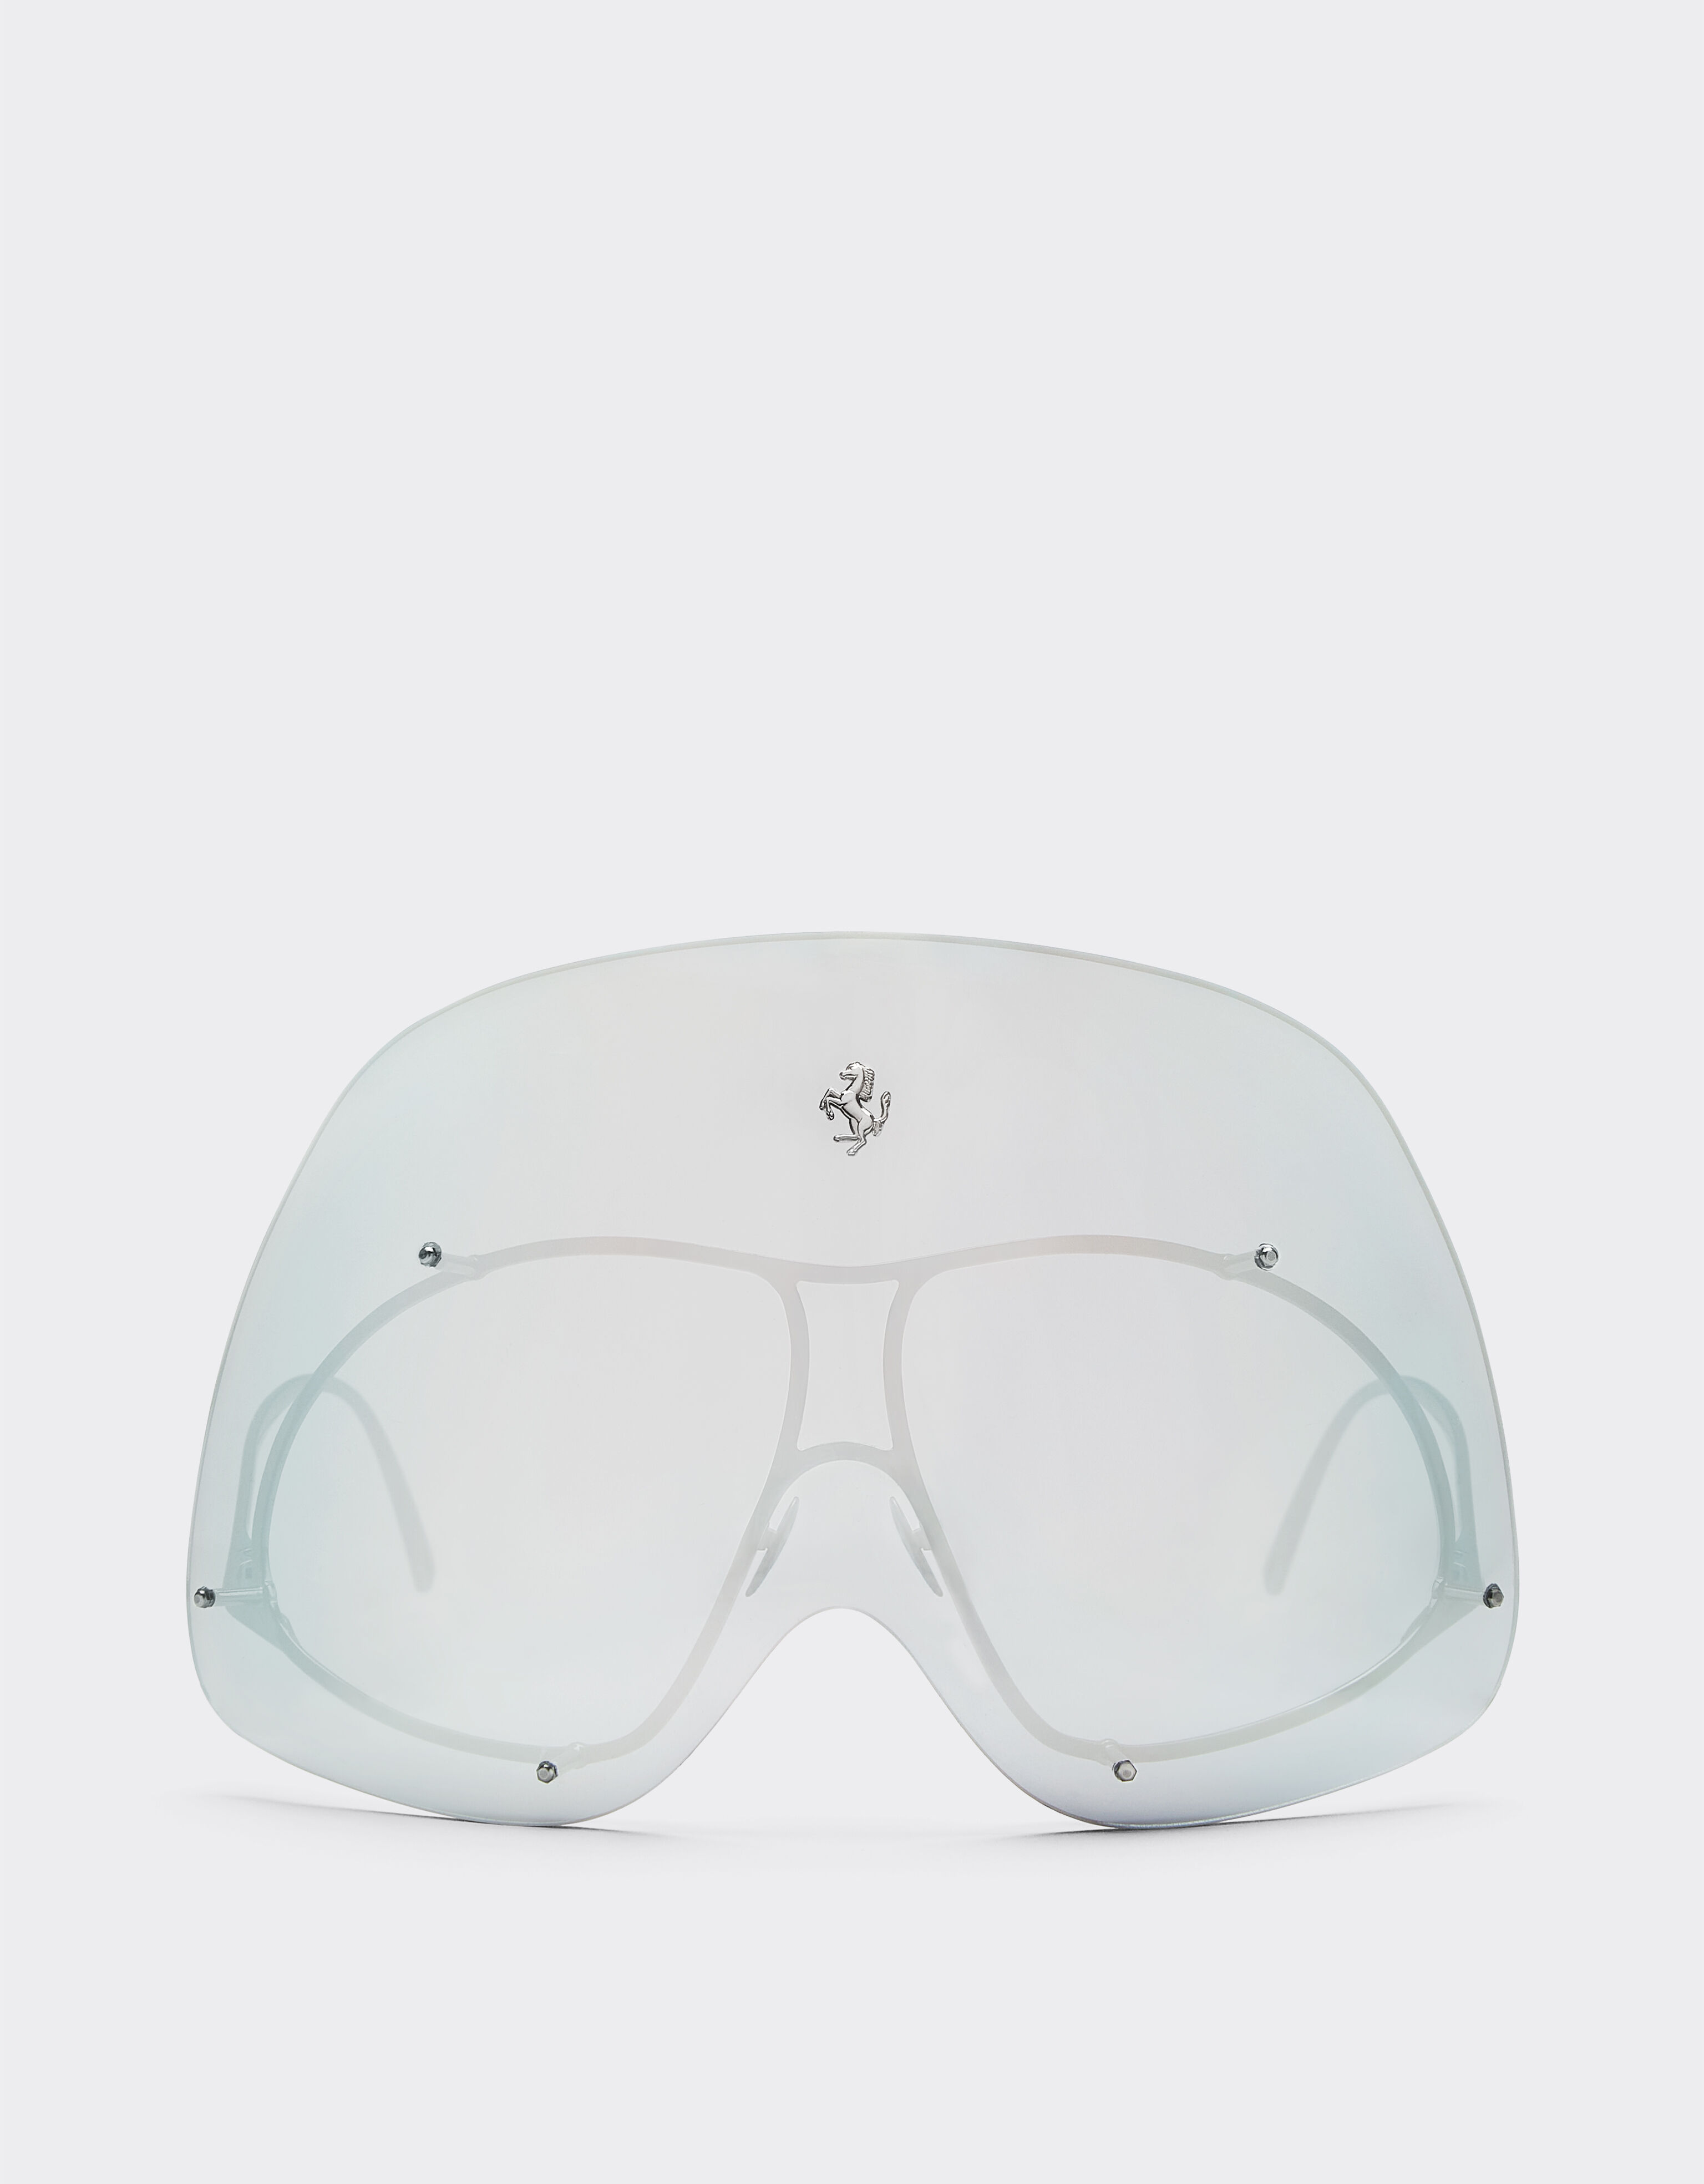 Ferrari Ferrari Limited Edition gunmetal sunglasses with mirrored shield Silver F1248f